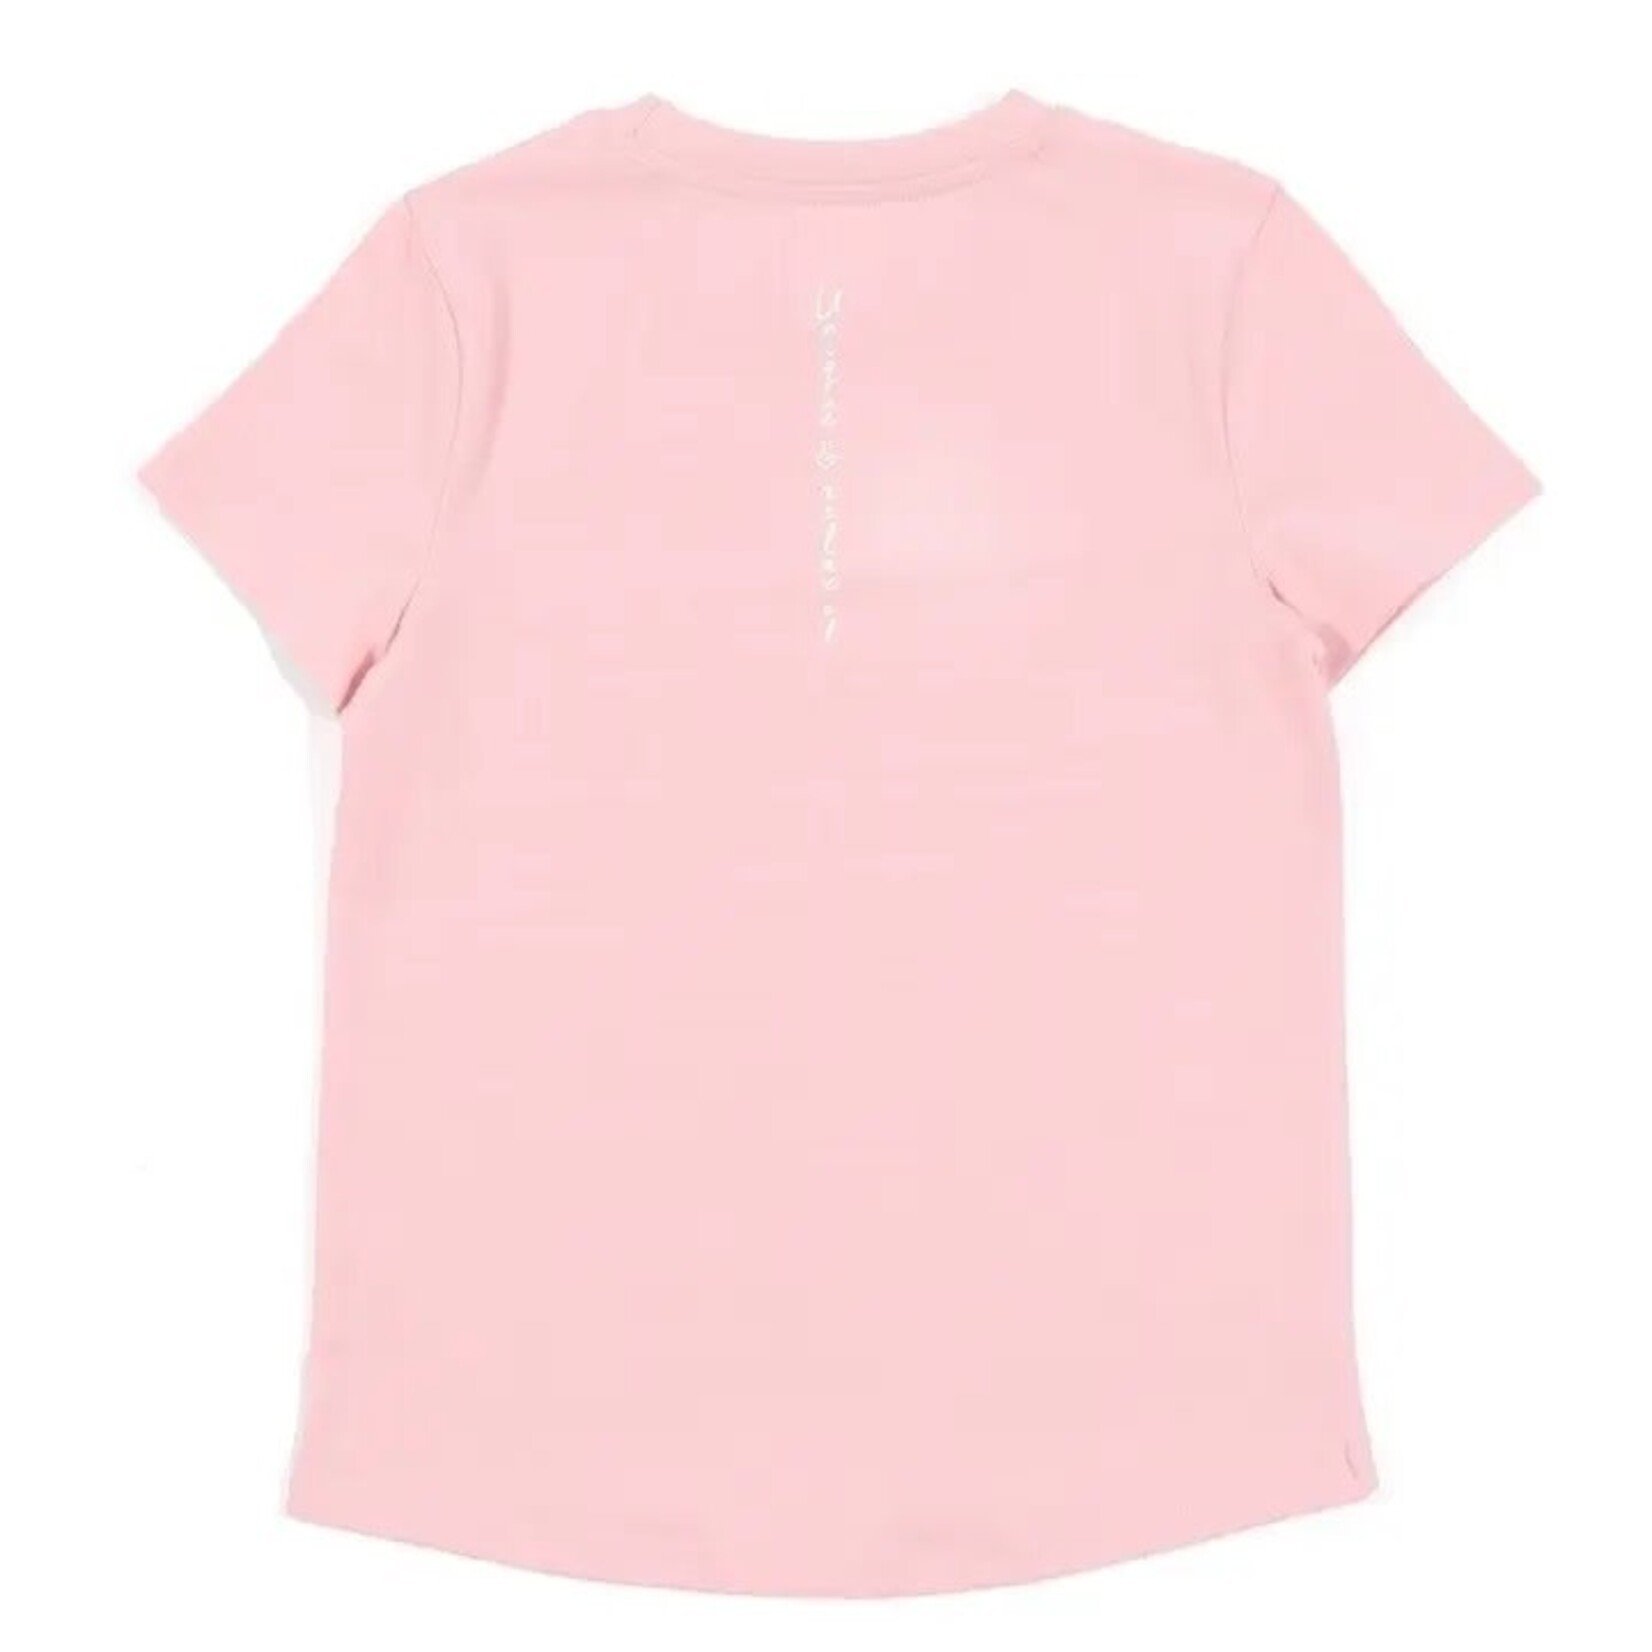 Nanö NANÖ - T-shirt uni rose pâle Unique & Relax 'Loungewear'